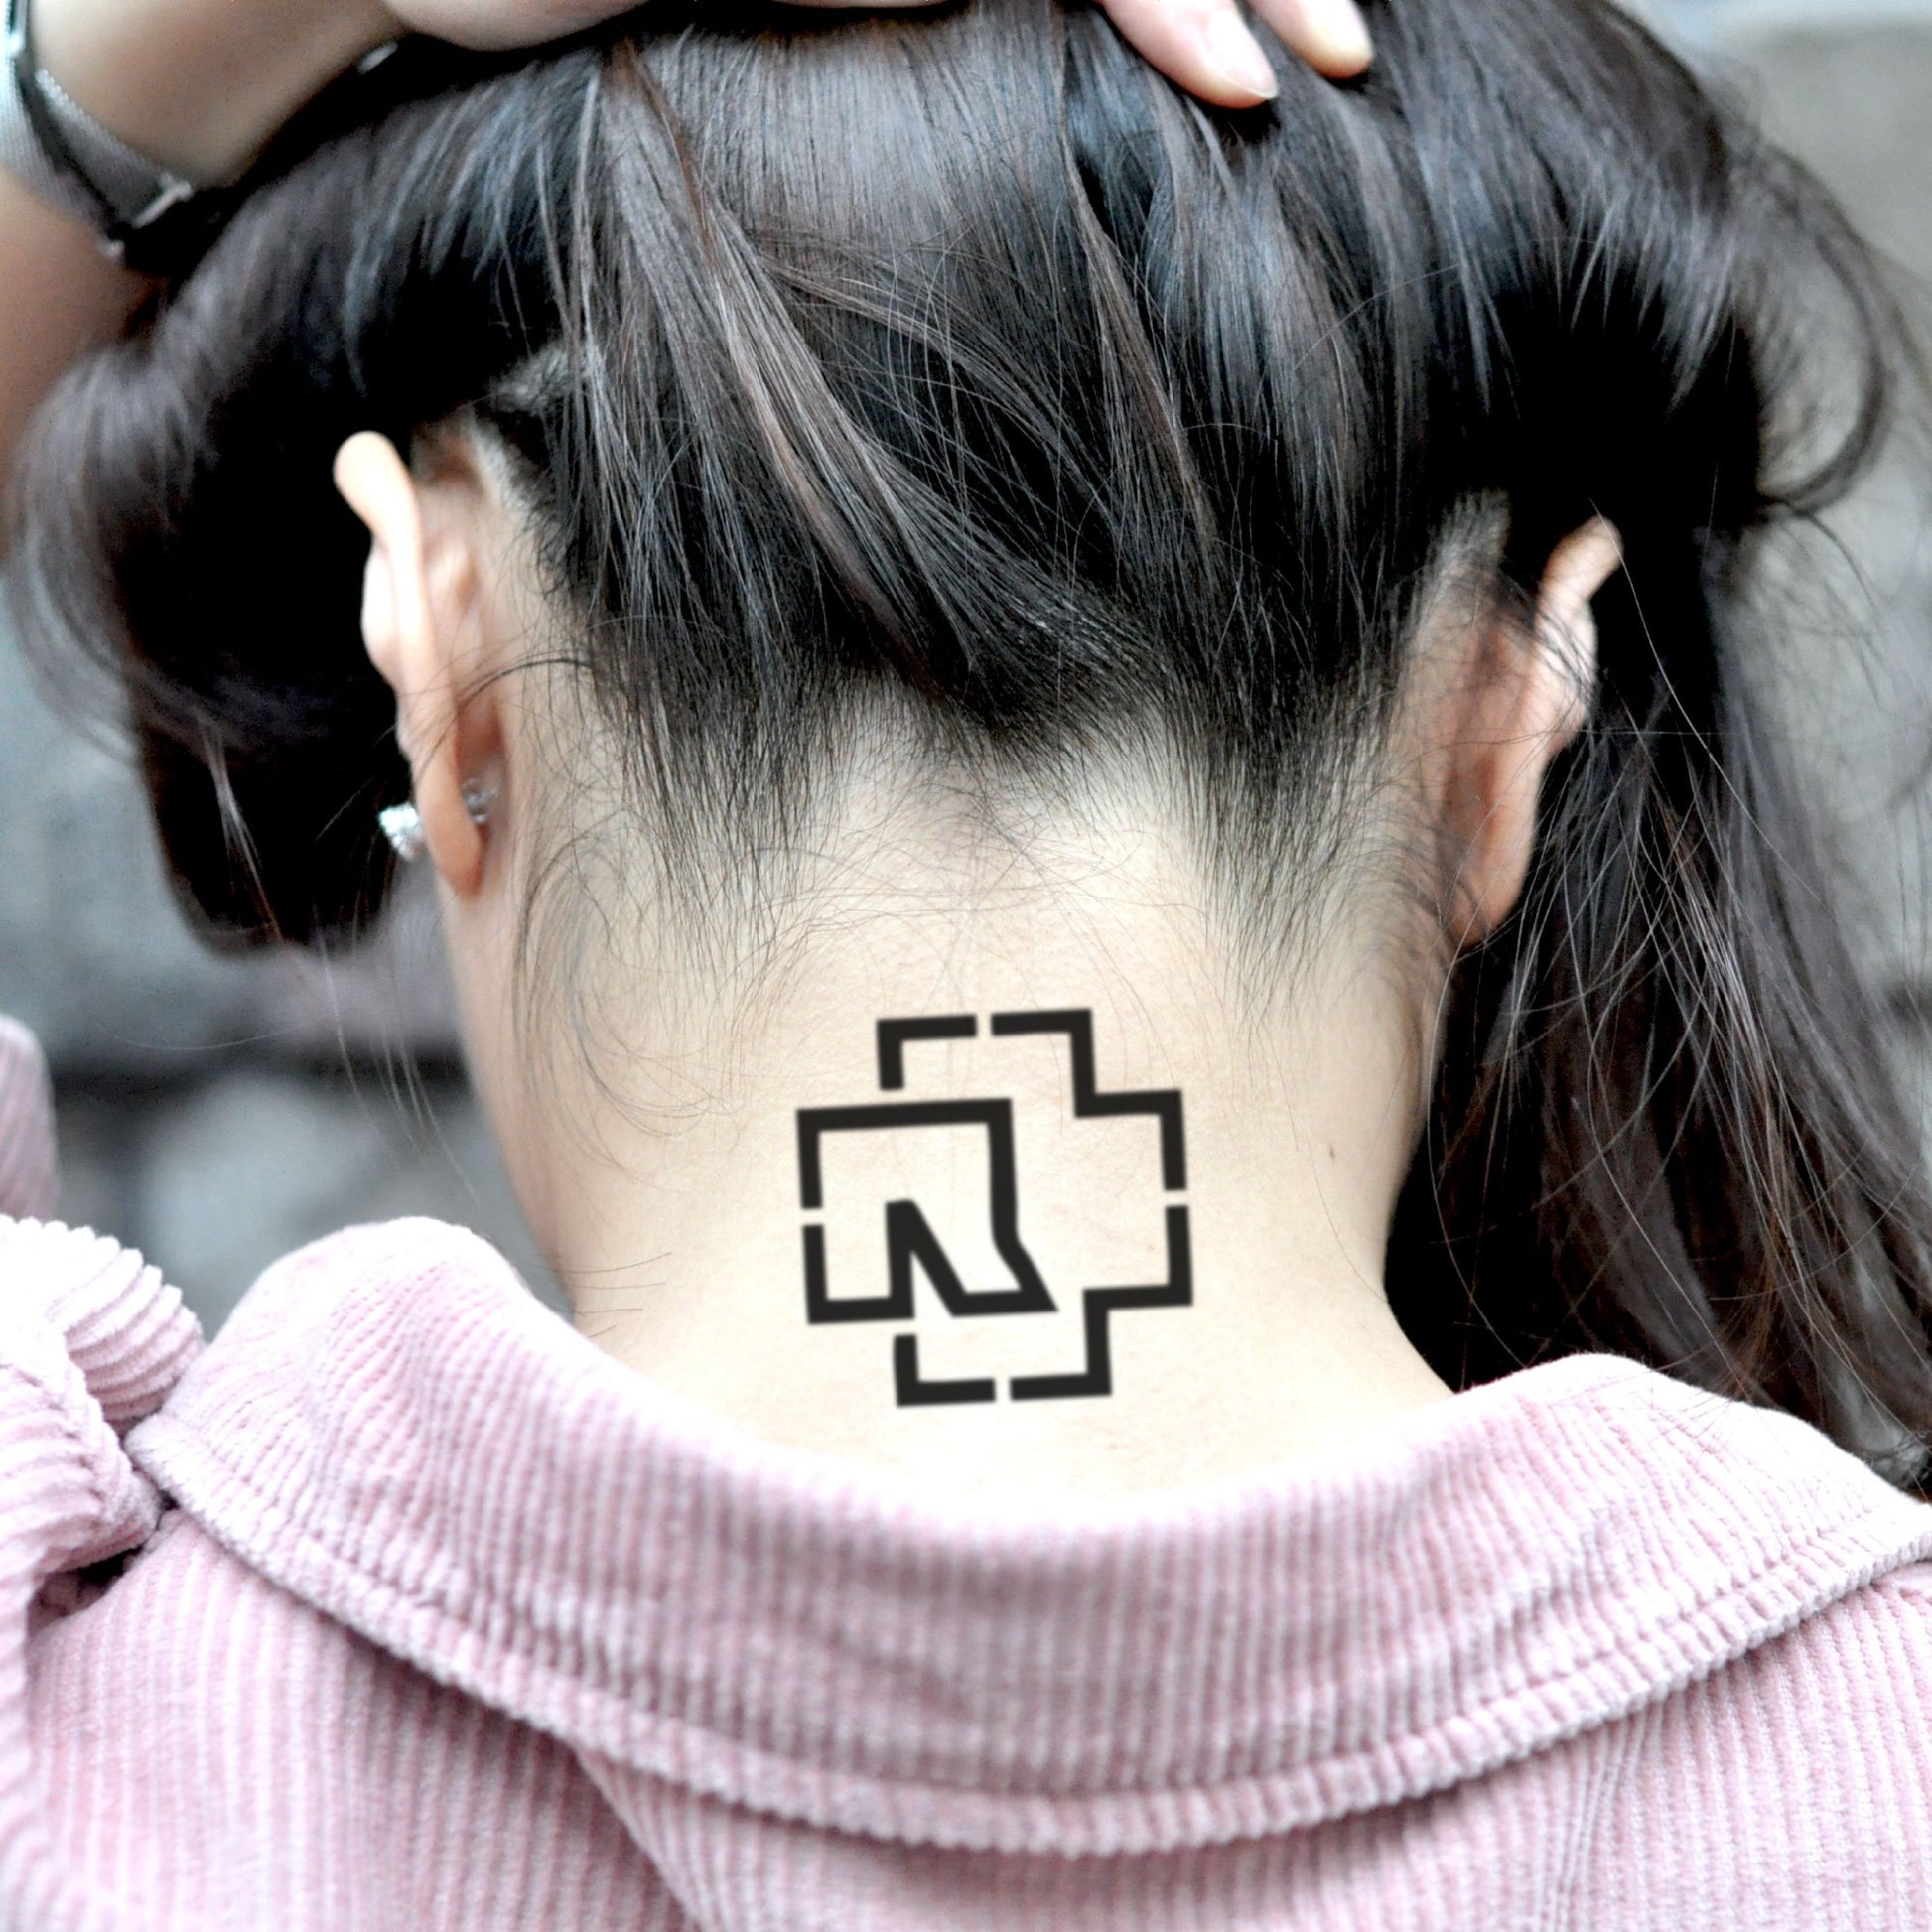 fake small rammstein logo minimalist temporary tattoo sticker design idea on neck